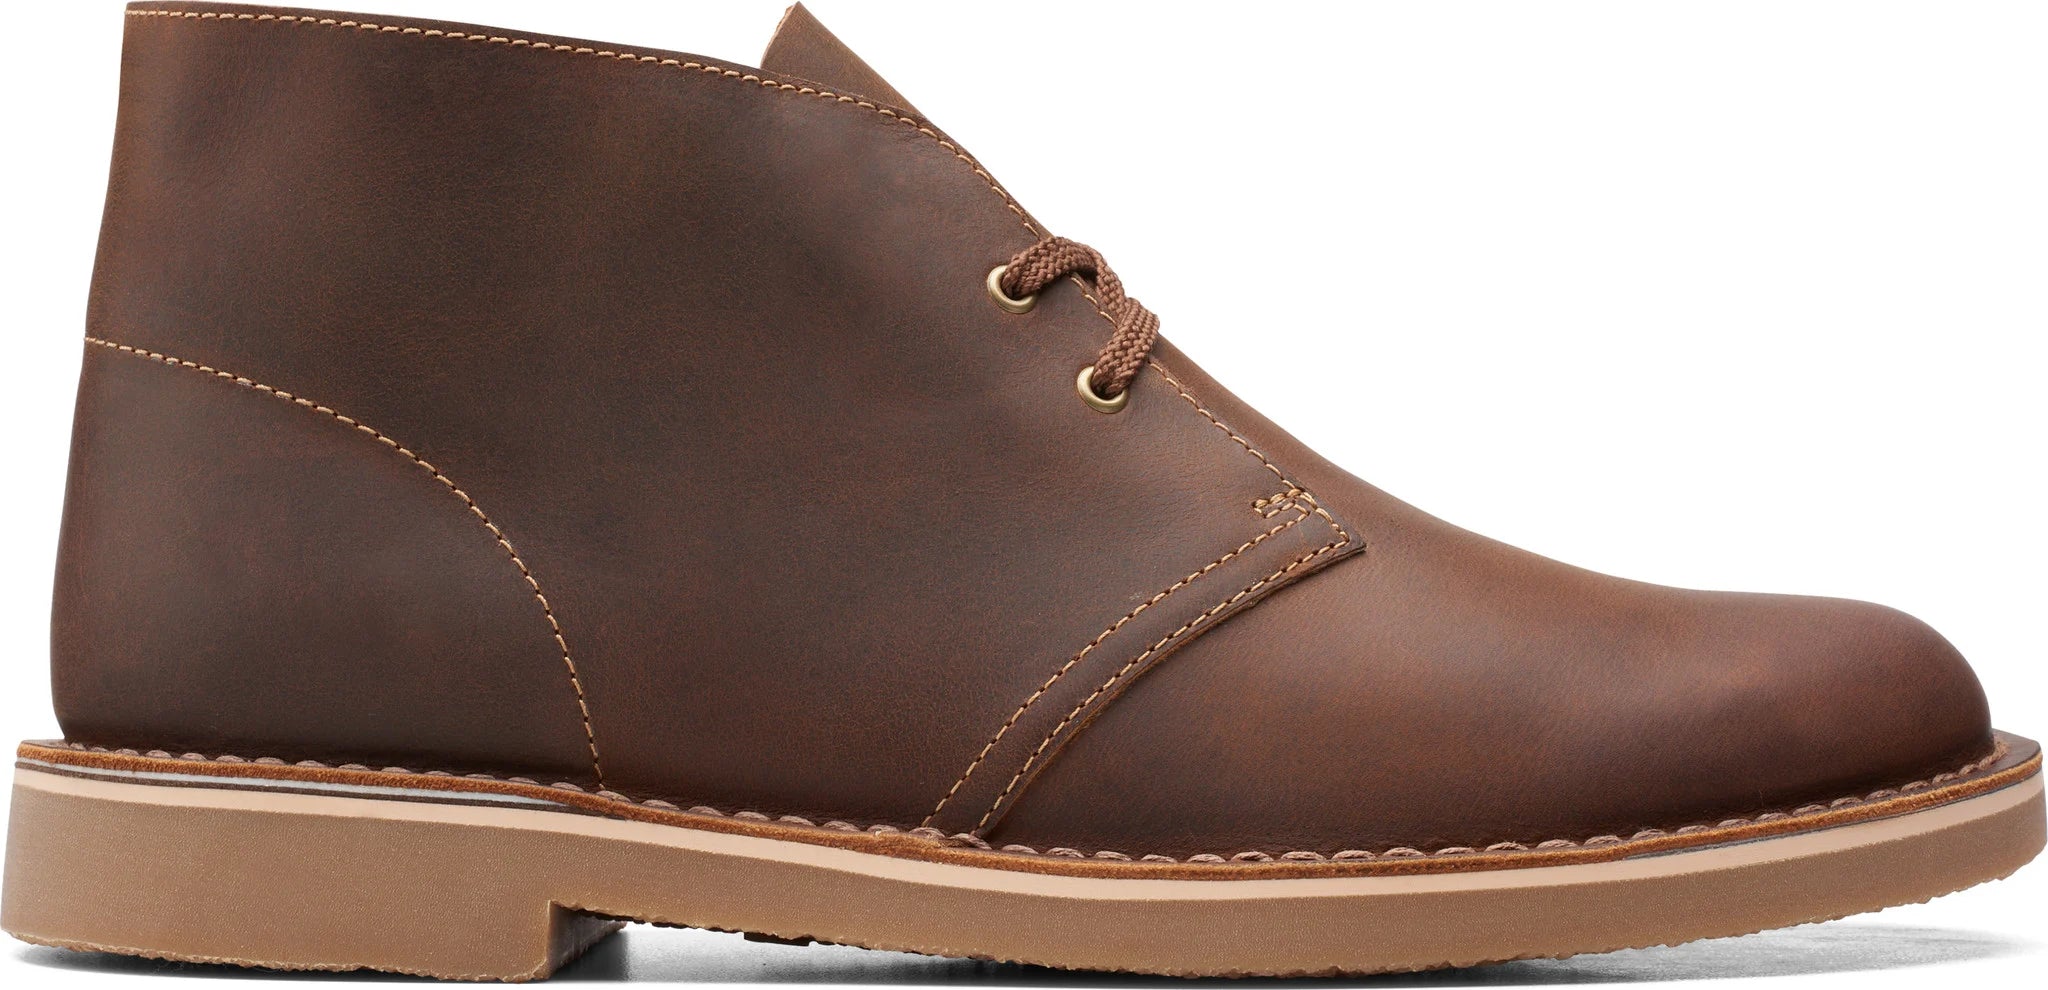 Clarks Men's Bushacre 3 Casual Boot Leather Takkens.Shoes